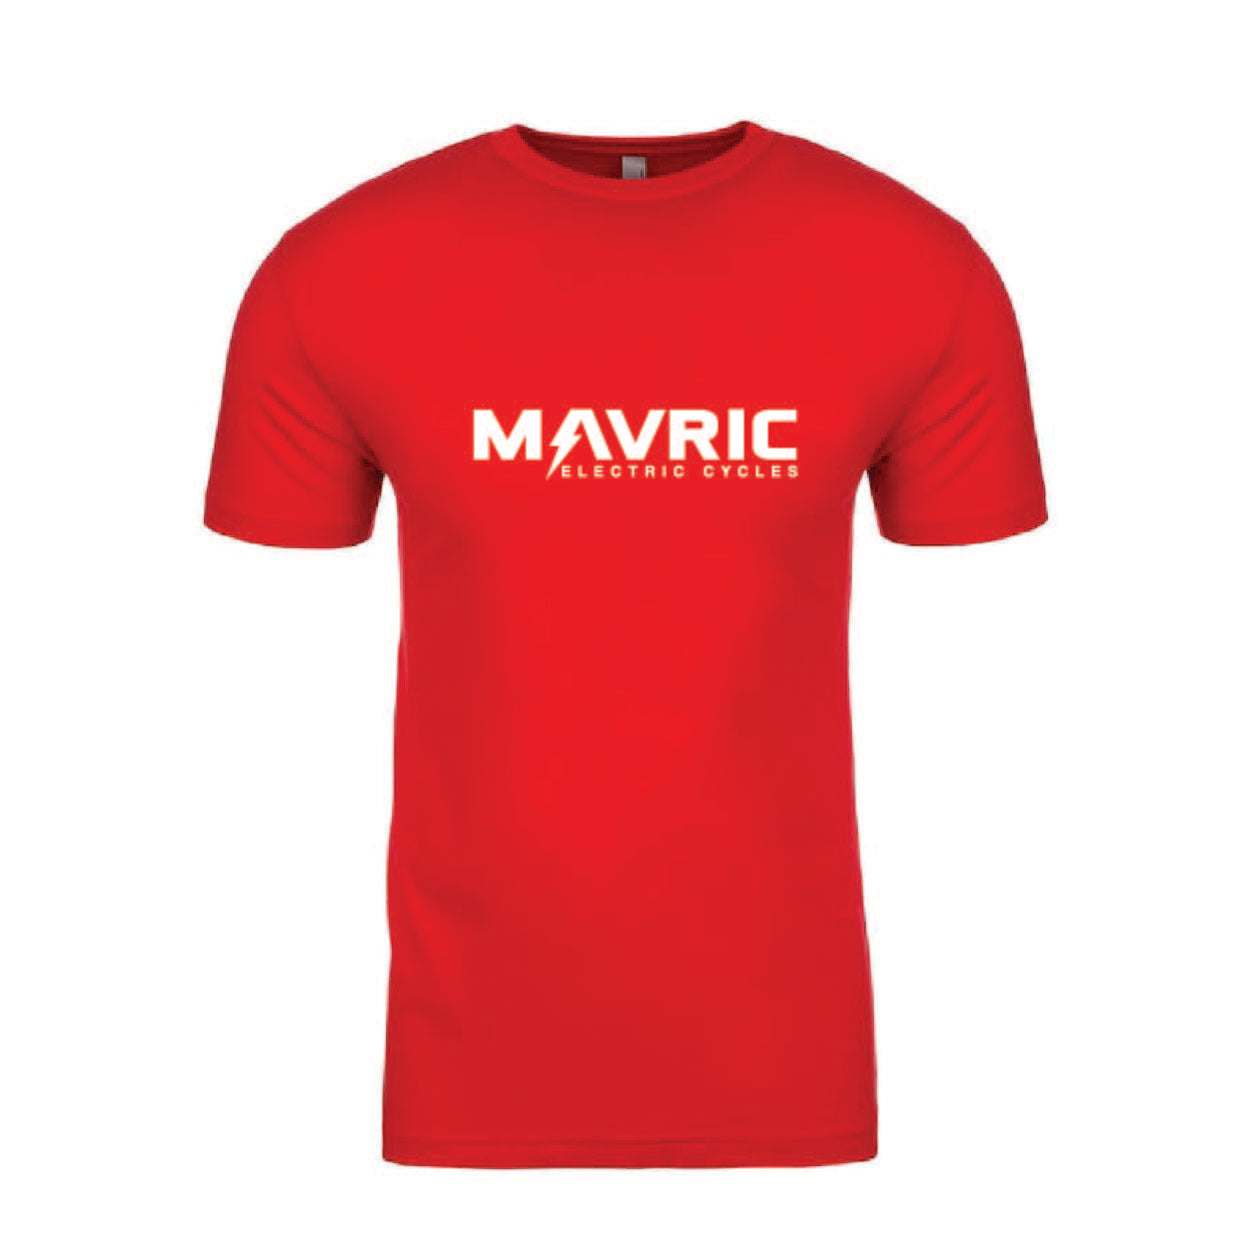 Mavric T-SHIRT RED